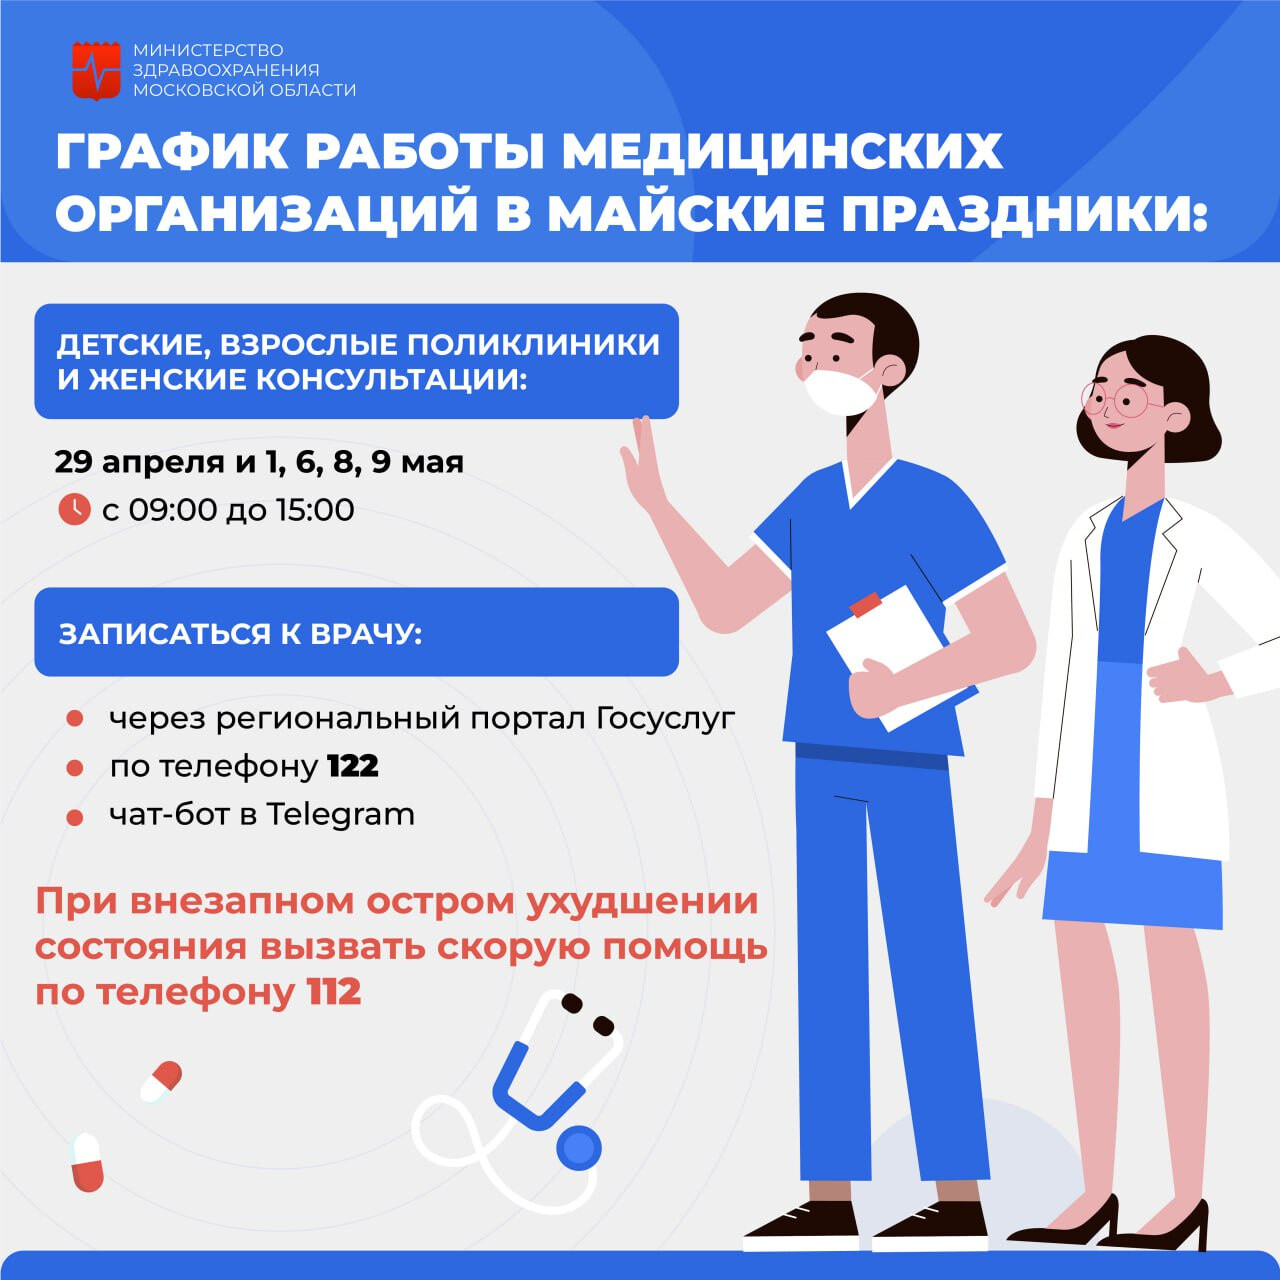 Как работают поликлиники в Орехово-Зуевском округе в майские праздники?